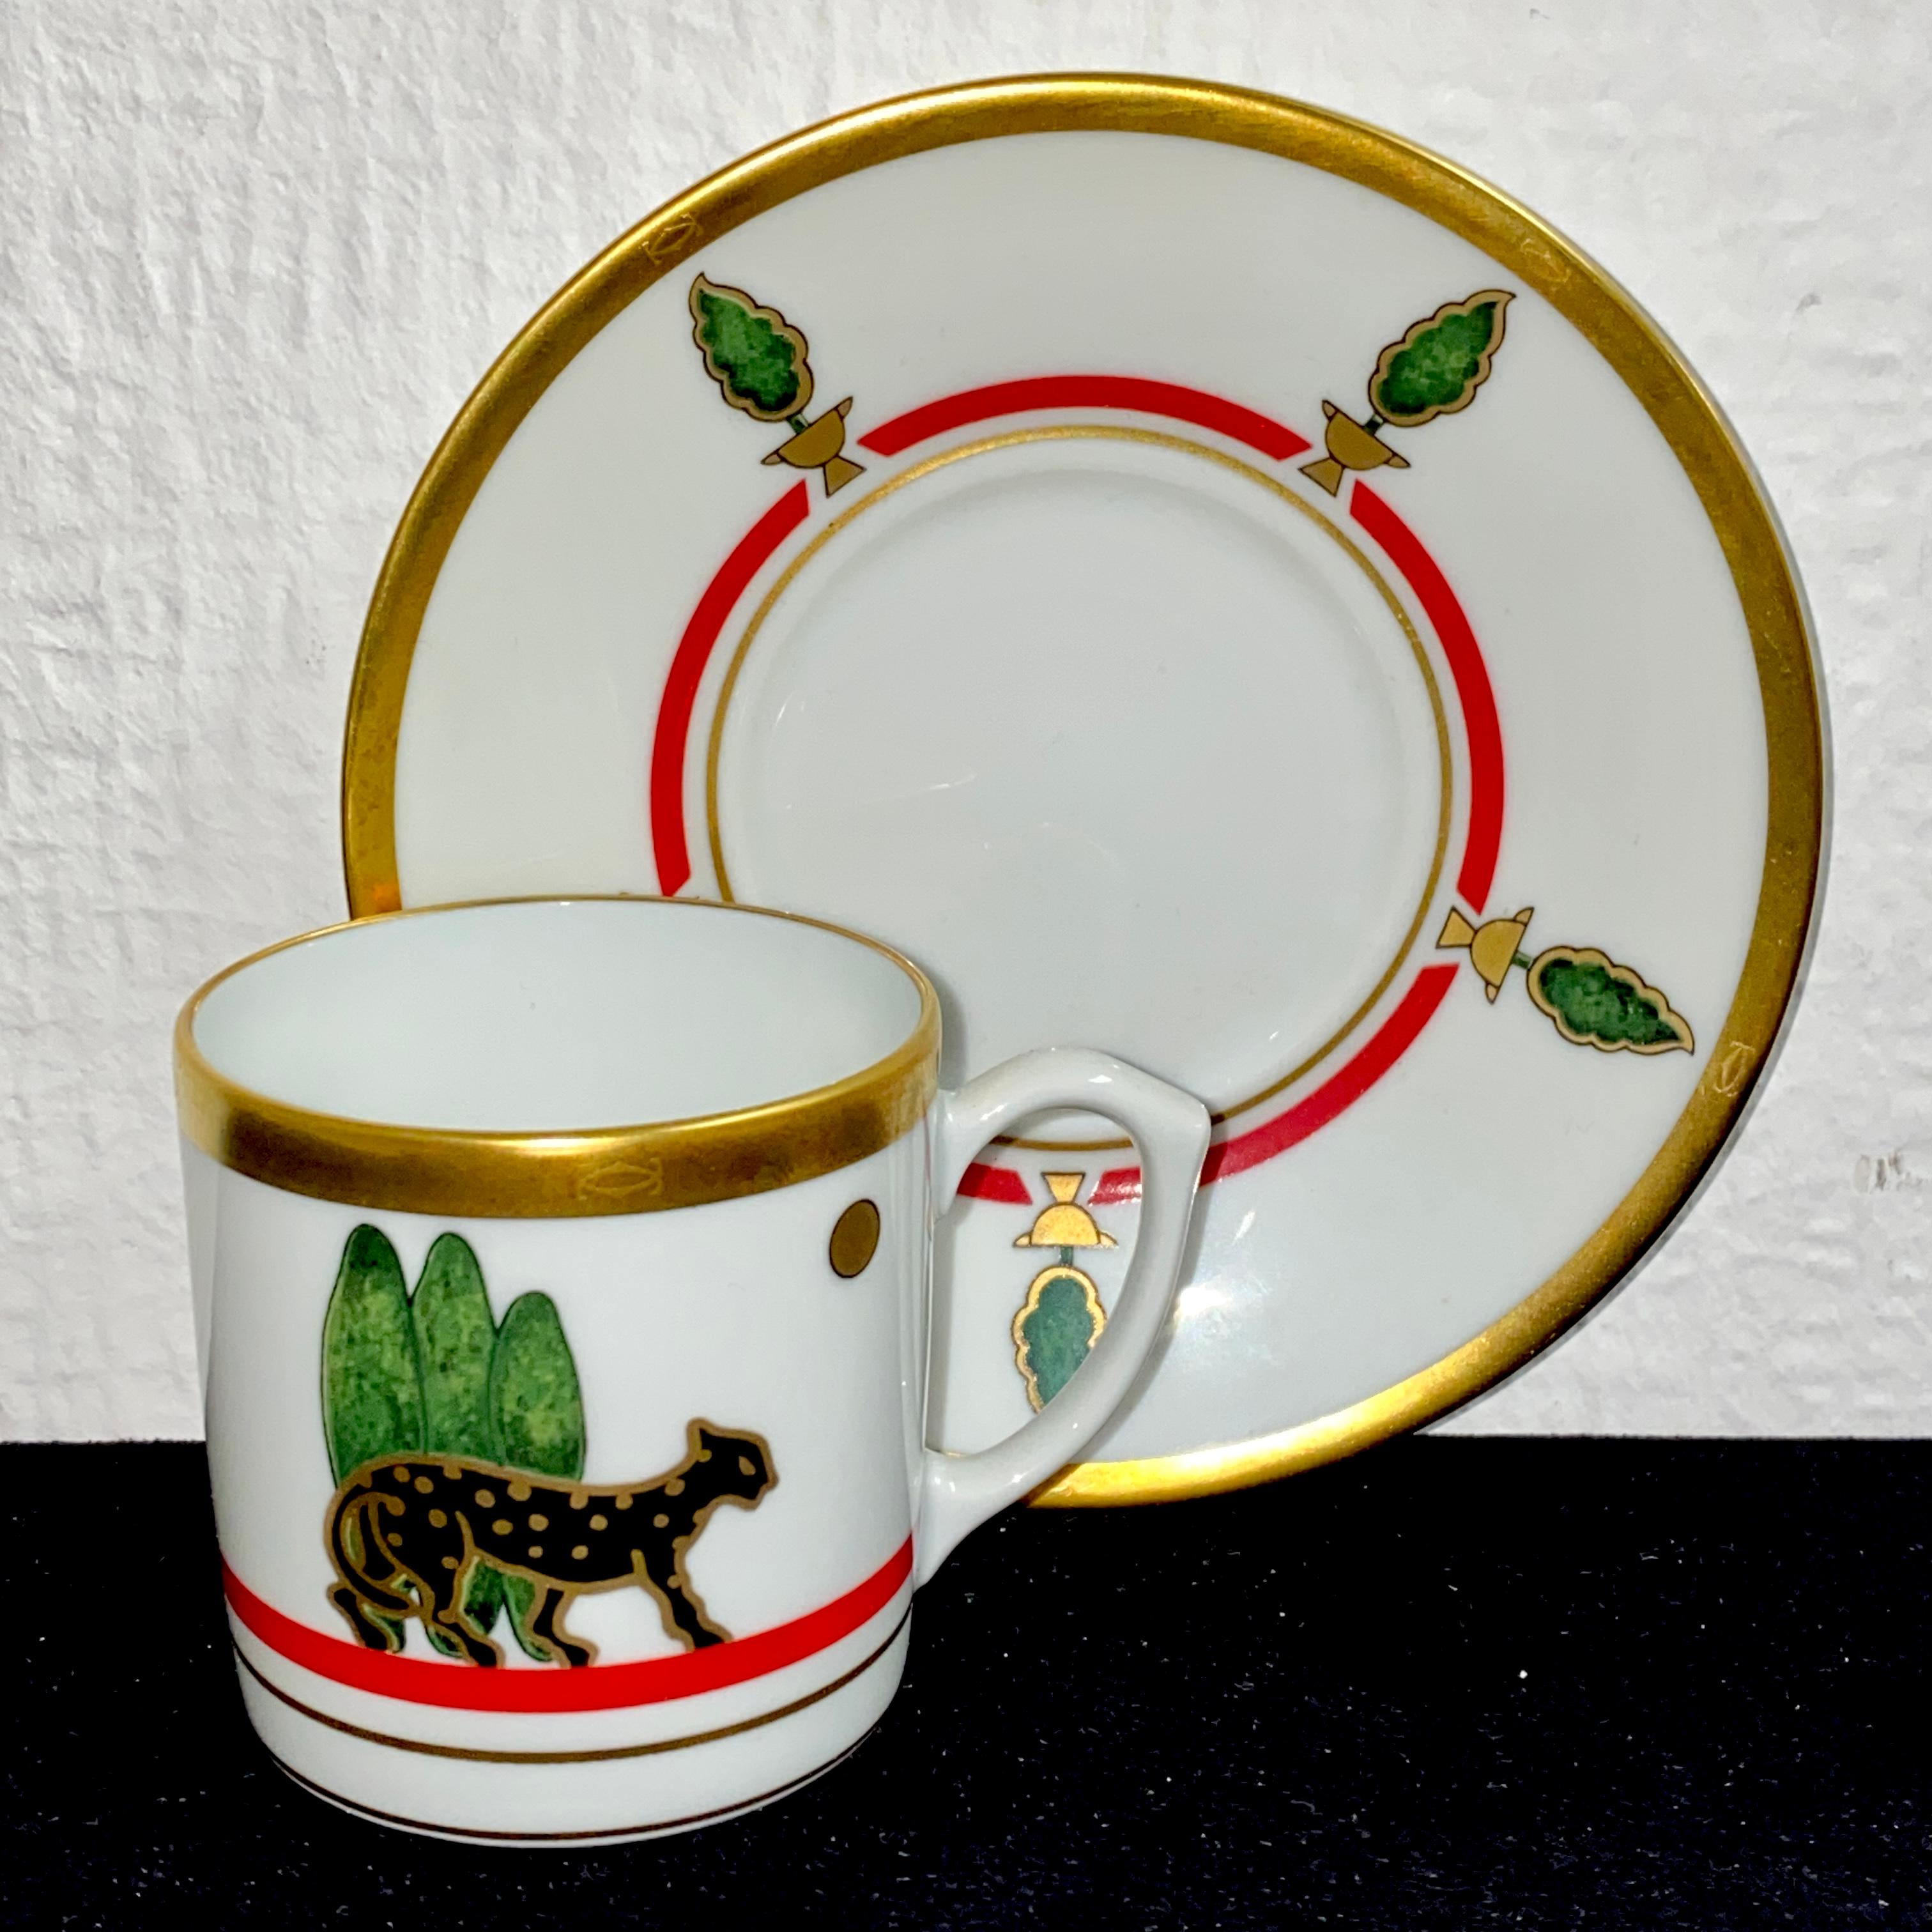 20th Century Porcelain Dinnerware, Tableware by Limoges and La Maison de Louis Cartier